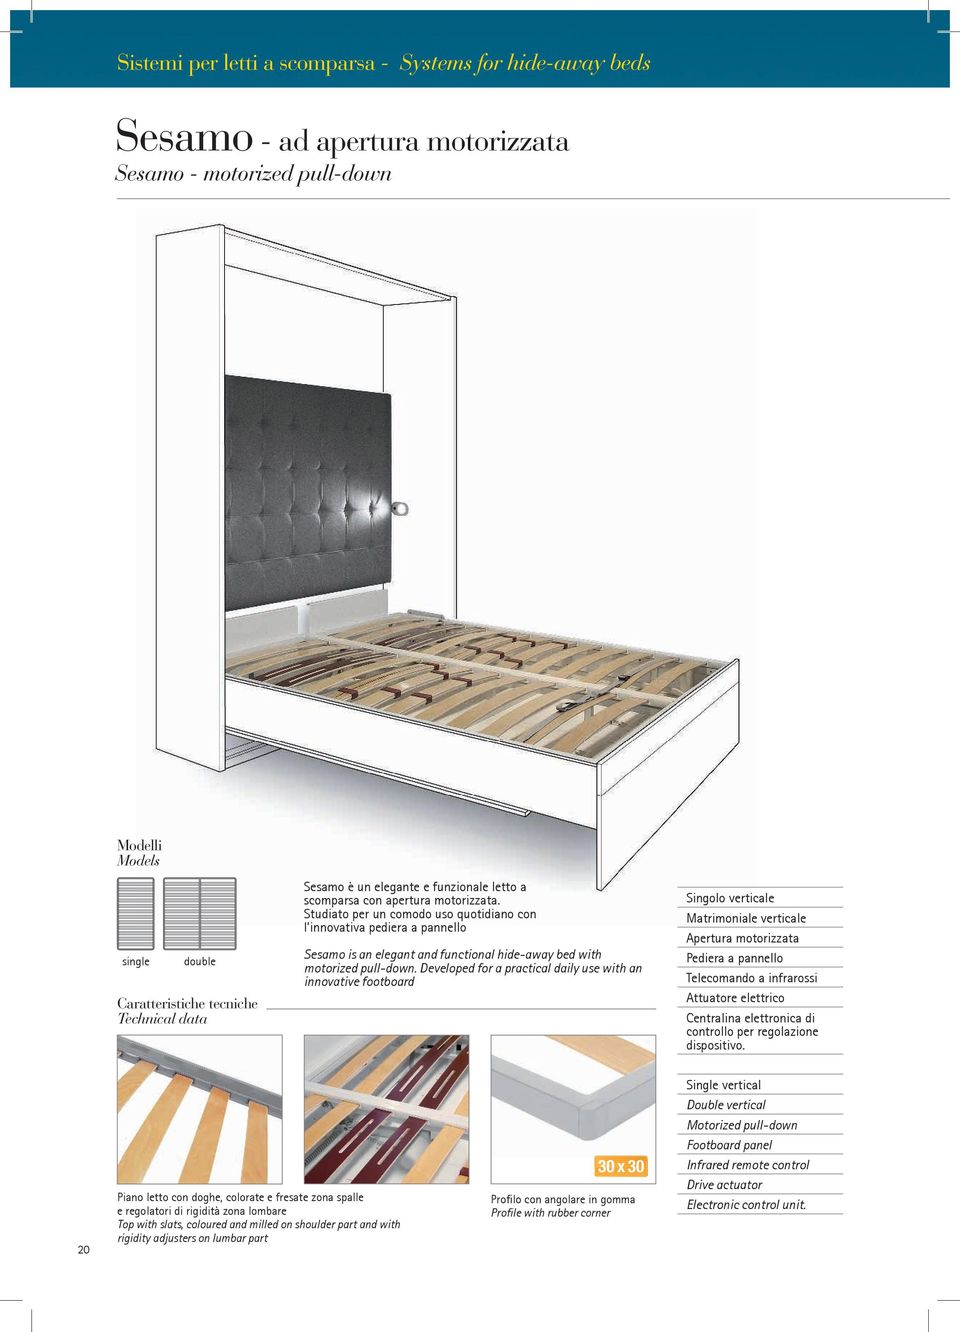 Studiato per un comodo uso quotidiano con l innovativa pediera a pannello Sesamo is an elegant and functional hide-away bed with motorized pull-down.